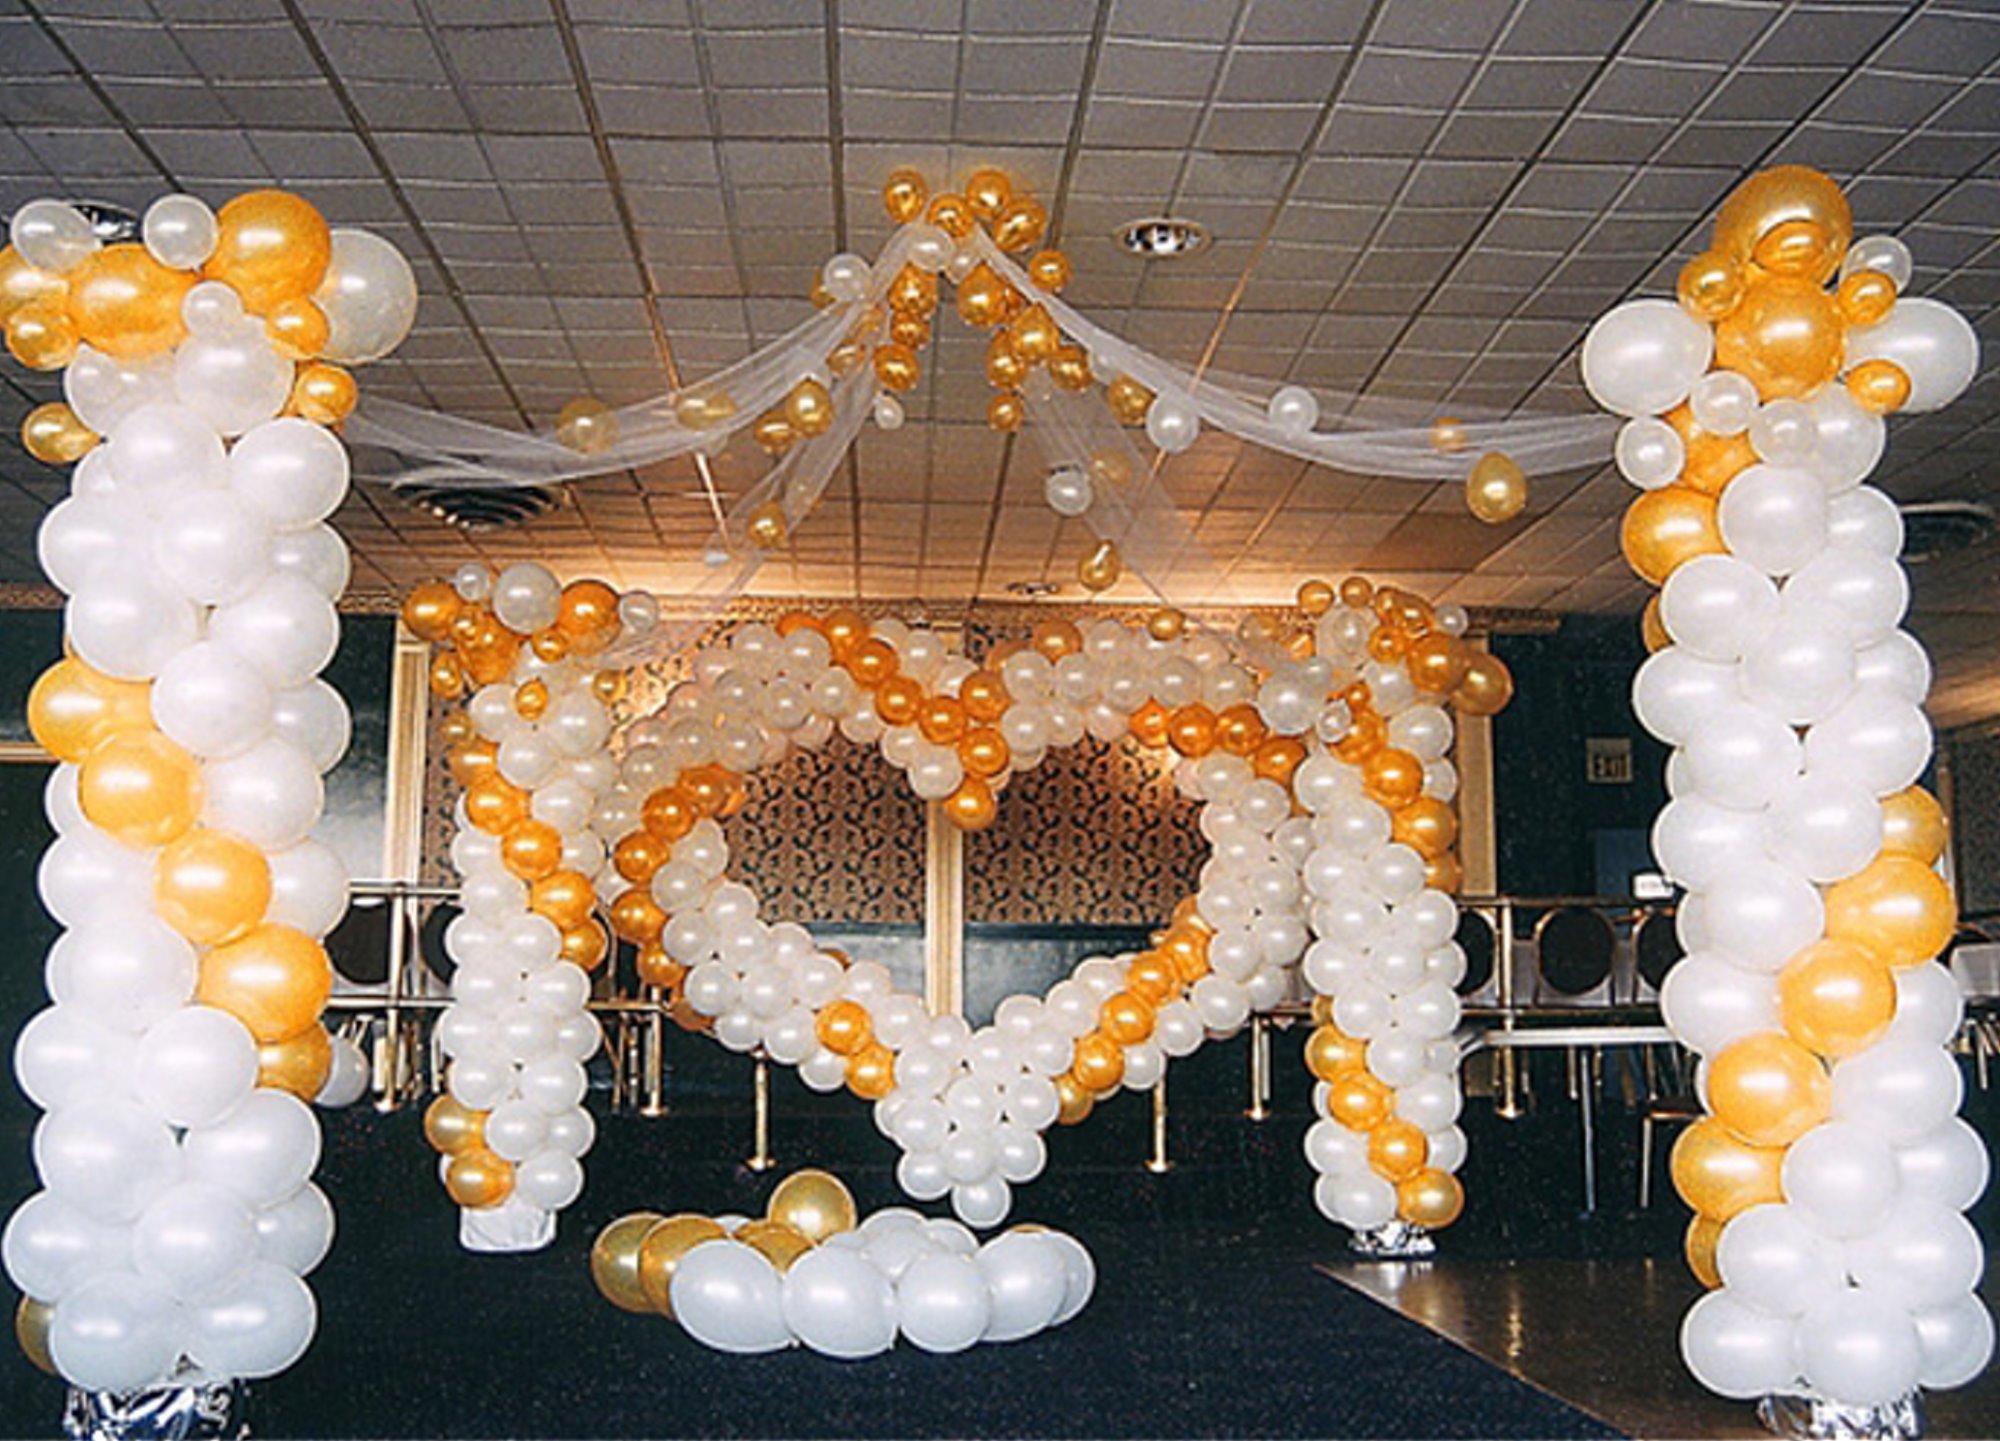 Оформление зала воздушными шарами. Украшение воздушными шарами. Украшение шарами на свадьбу. Украшение свадебного зала шарами. Шары для украшения зала.